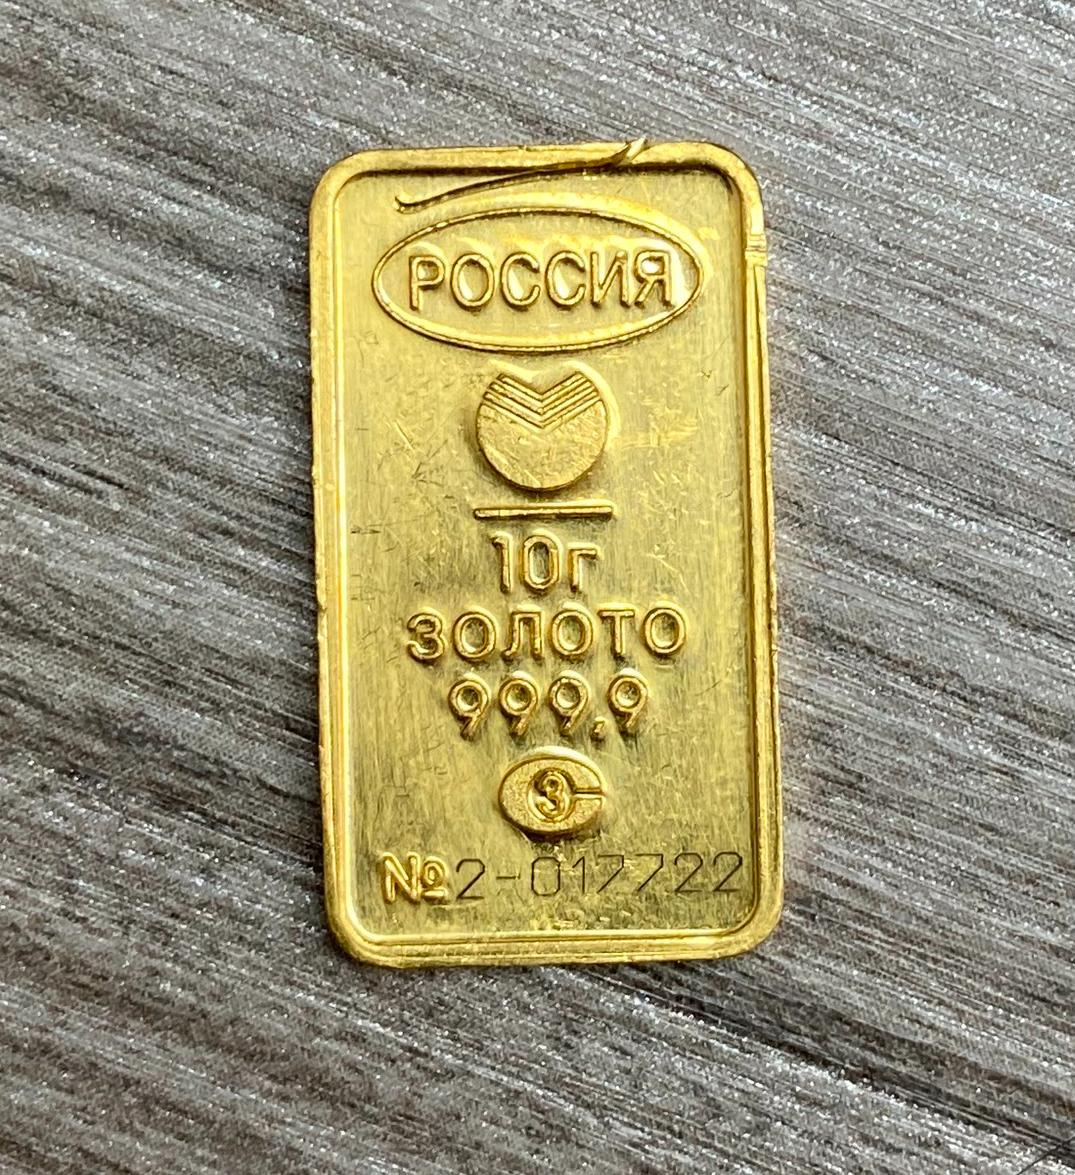 Скупка лома золота в Екатеринбурге по высокой цене за грамм